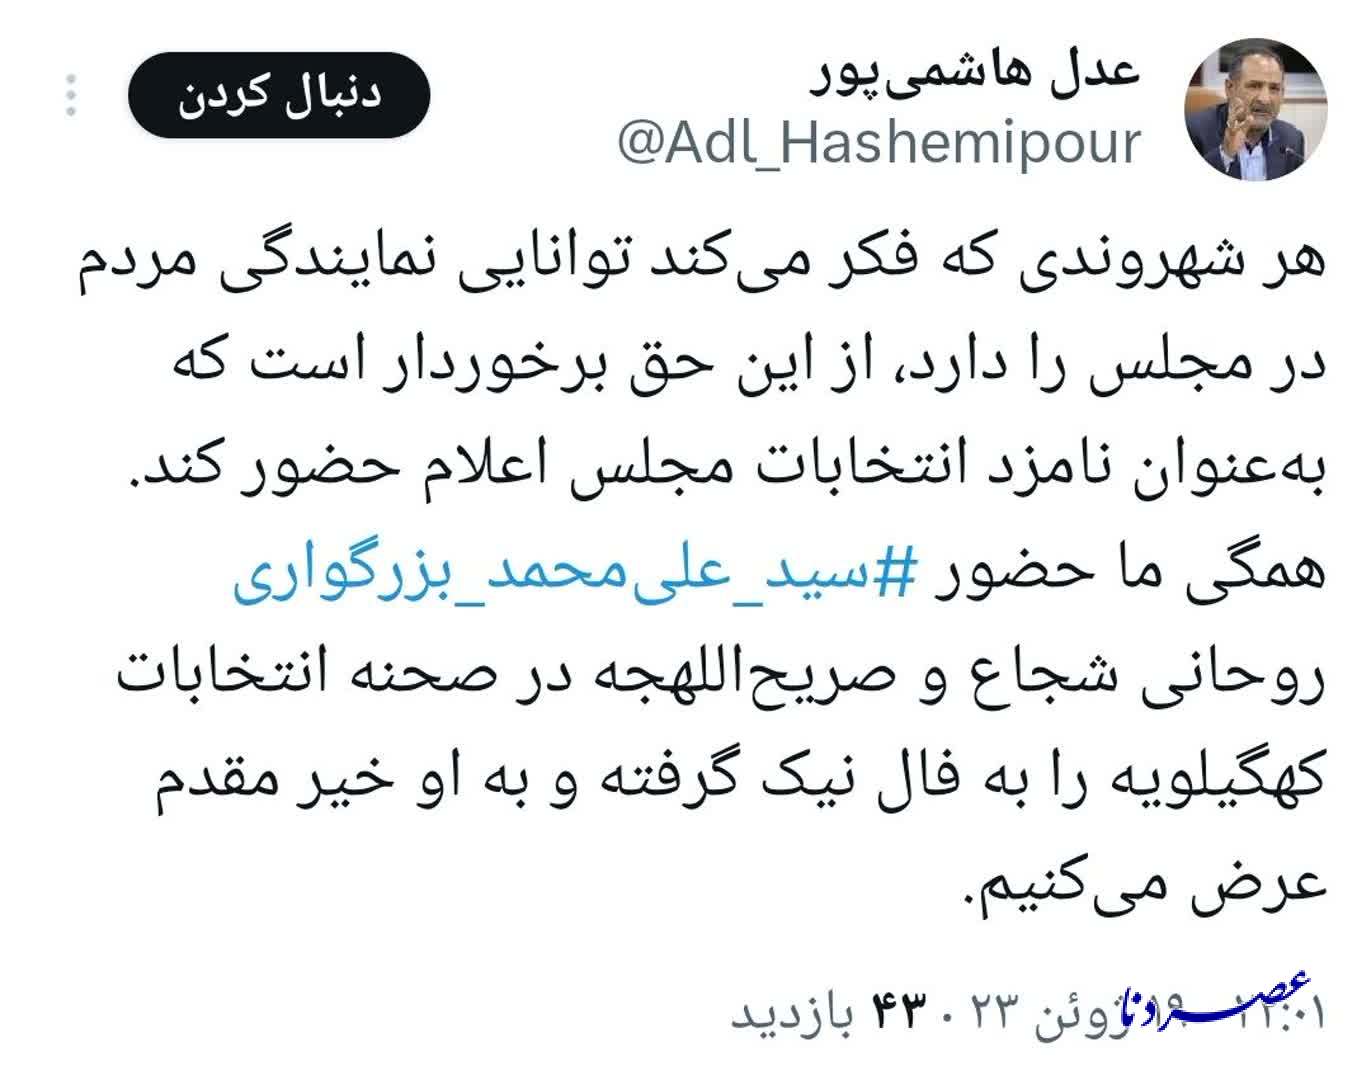 واکنش «عدل هاشمی پور» به اعلام رسمی «بزرگواری» برای حضور در انتخابات